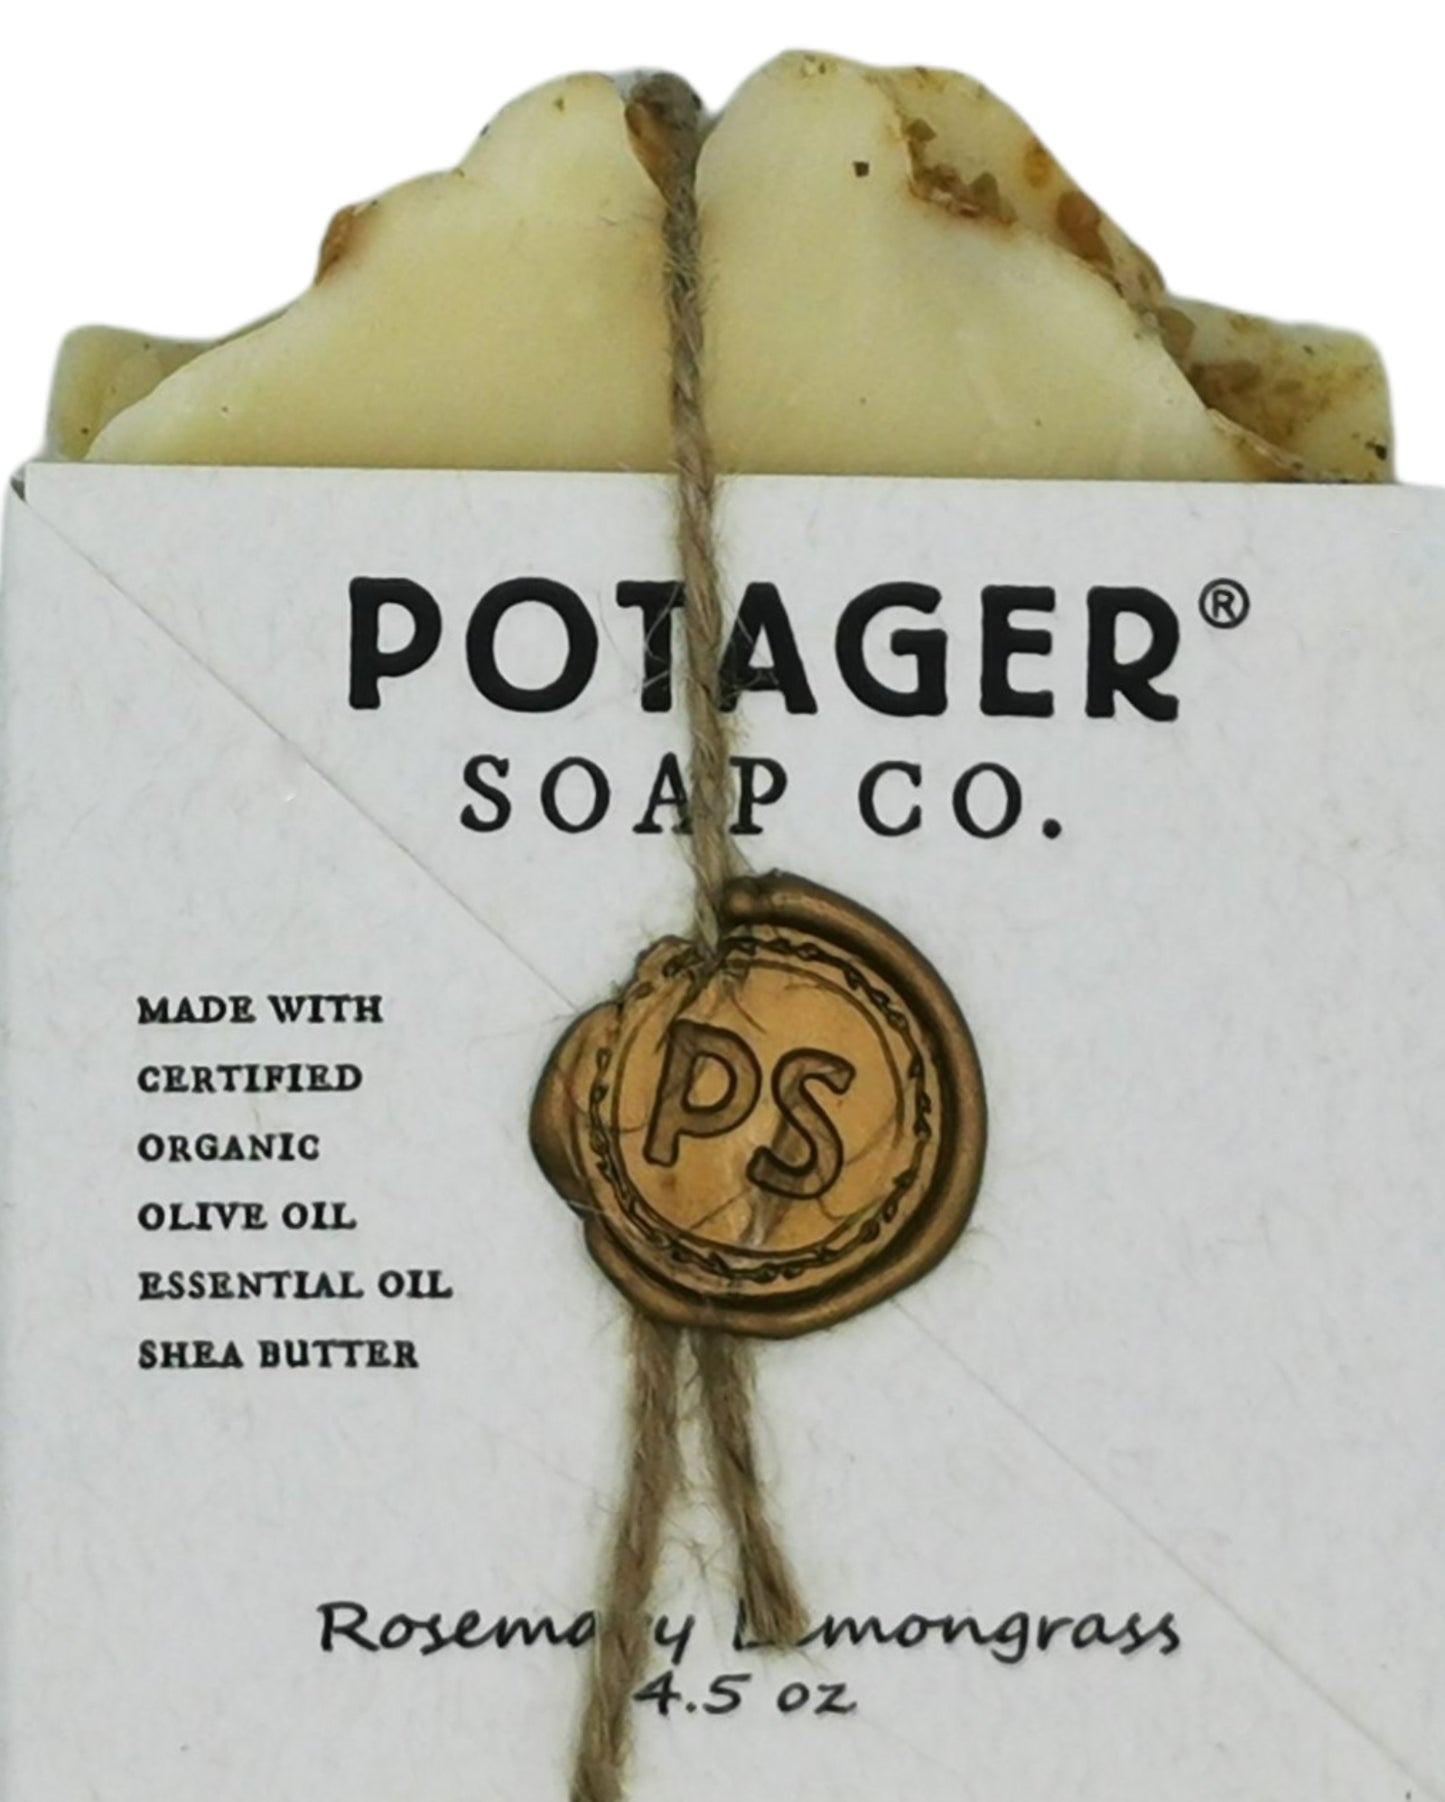 Potager Soap Rosemary Lemongrass 128g